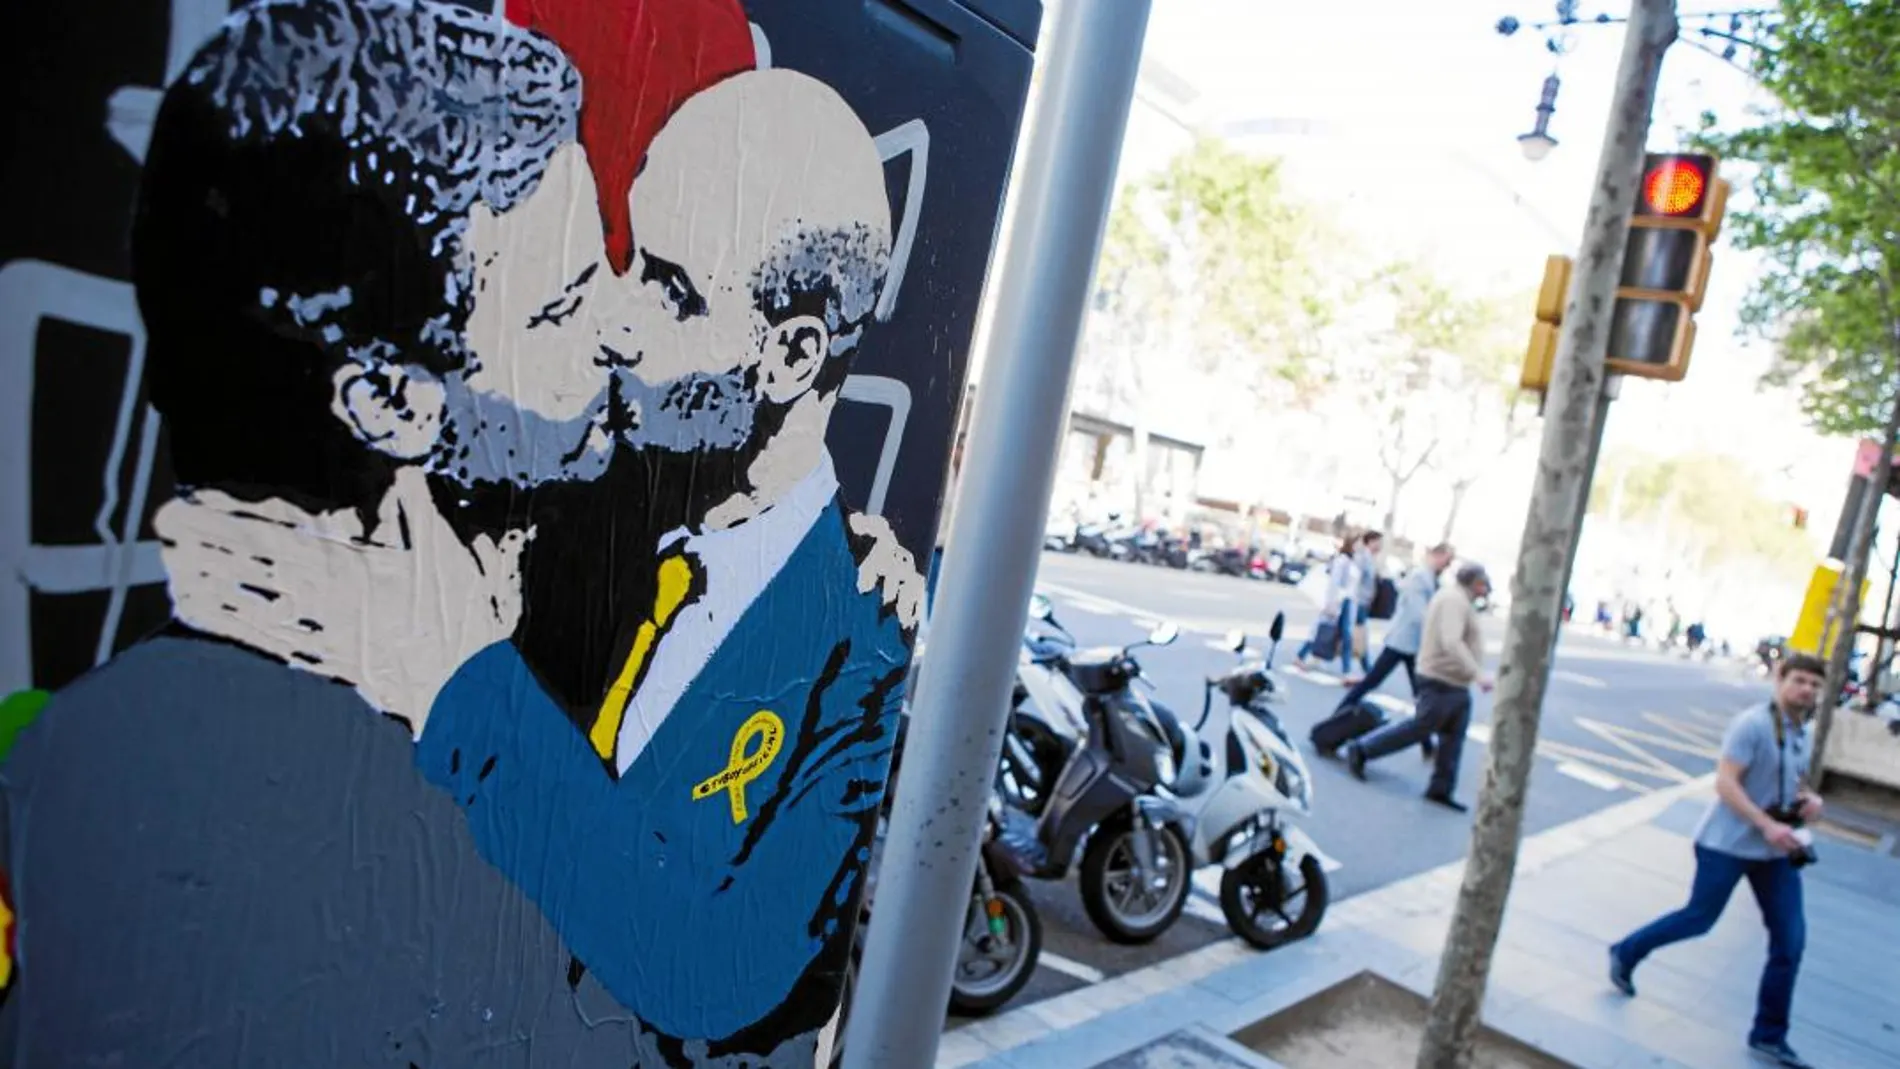 El entrenador del Manchester City, Pep Guardiola y el entrenador del Manchester United José Mourinho, conocidos por su rivalidad, se besan para celebrar la diada de Sant Jordi en este grafiti, obra del artista urbano TVboy